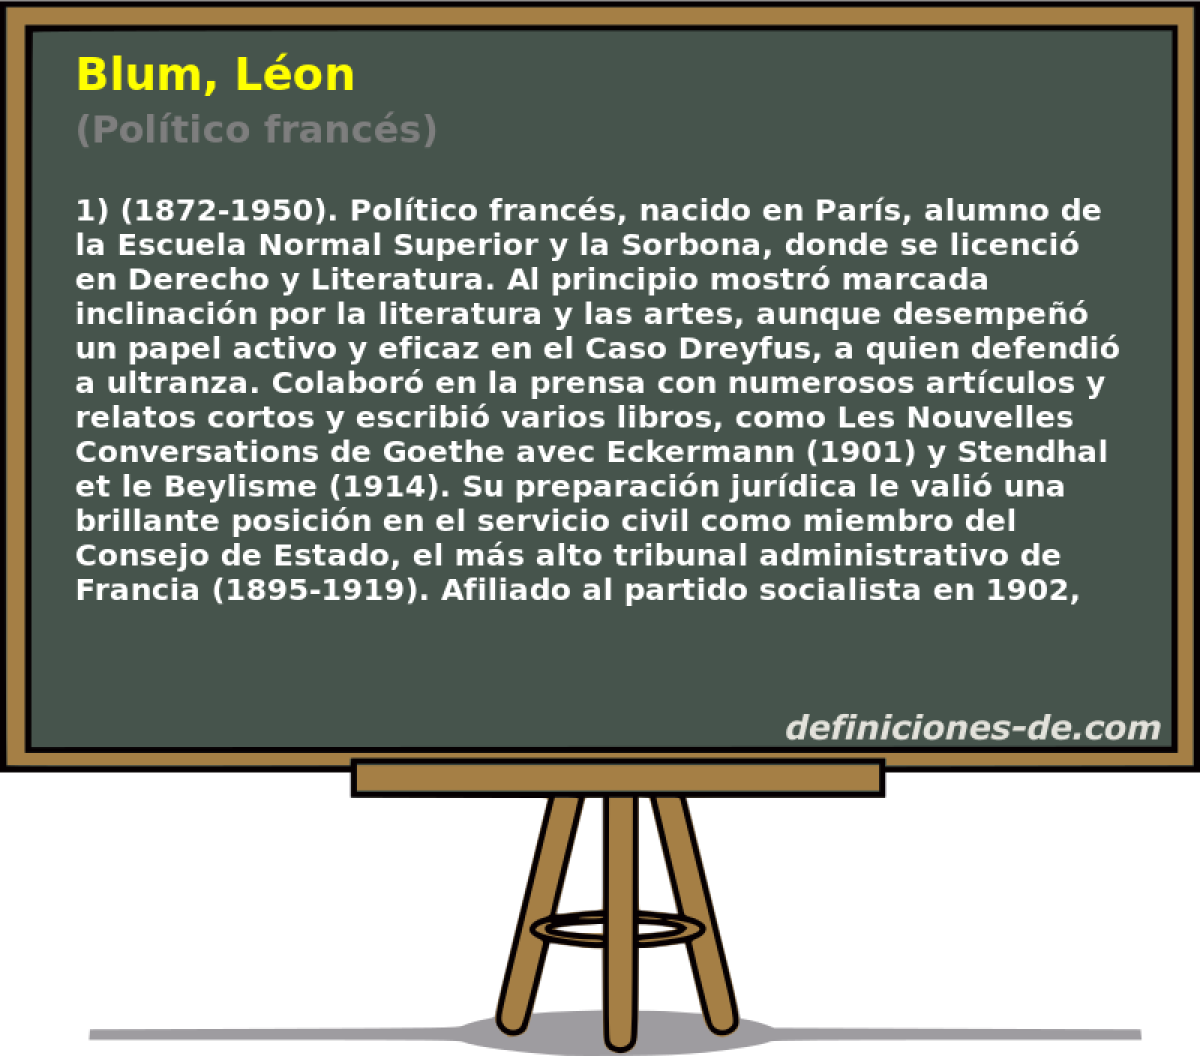 Blum, Lon (Poltico francs)